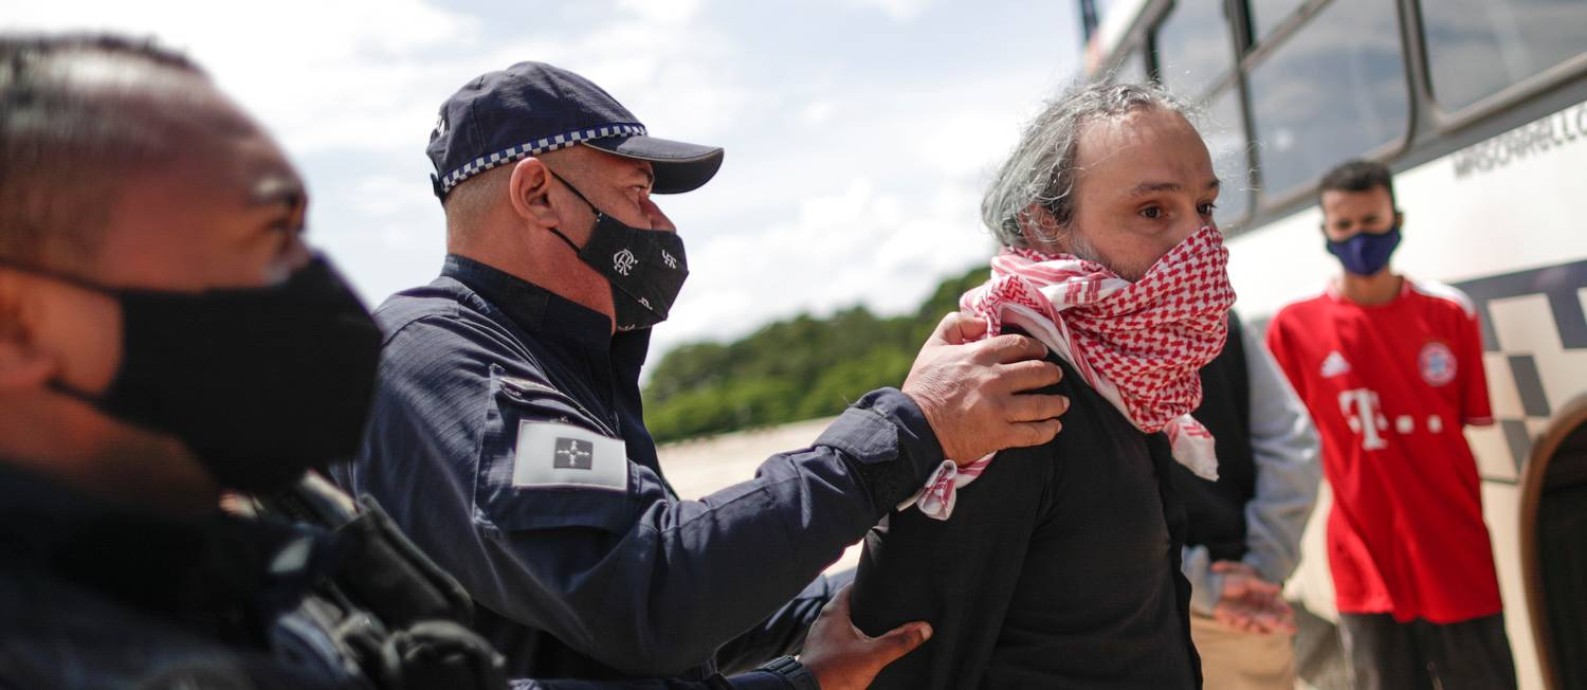 Policiais prenderam manifestantes com faixa em que chamavam Bolsonaro de genocida 18/03/2021 Foto: UESLEI MARCELINO / REUTERS